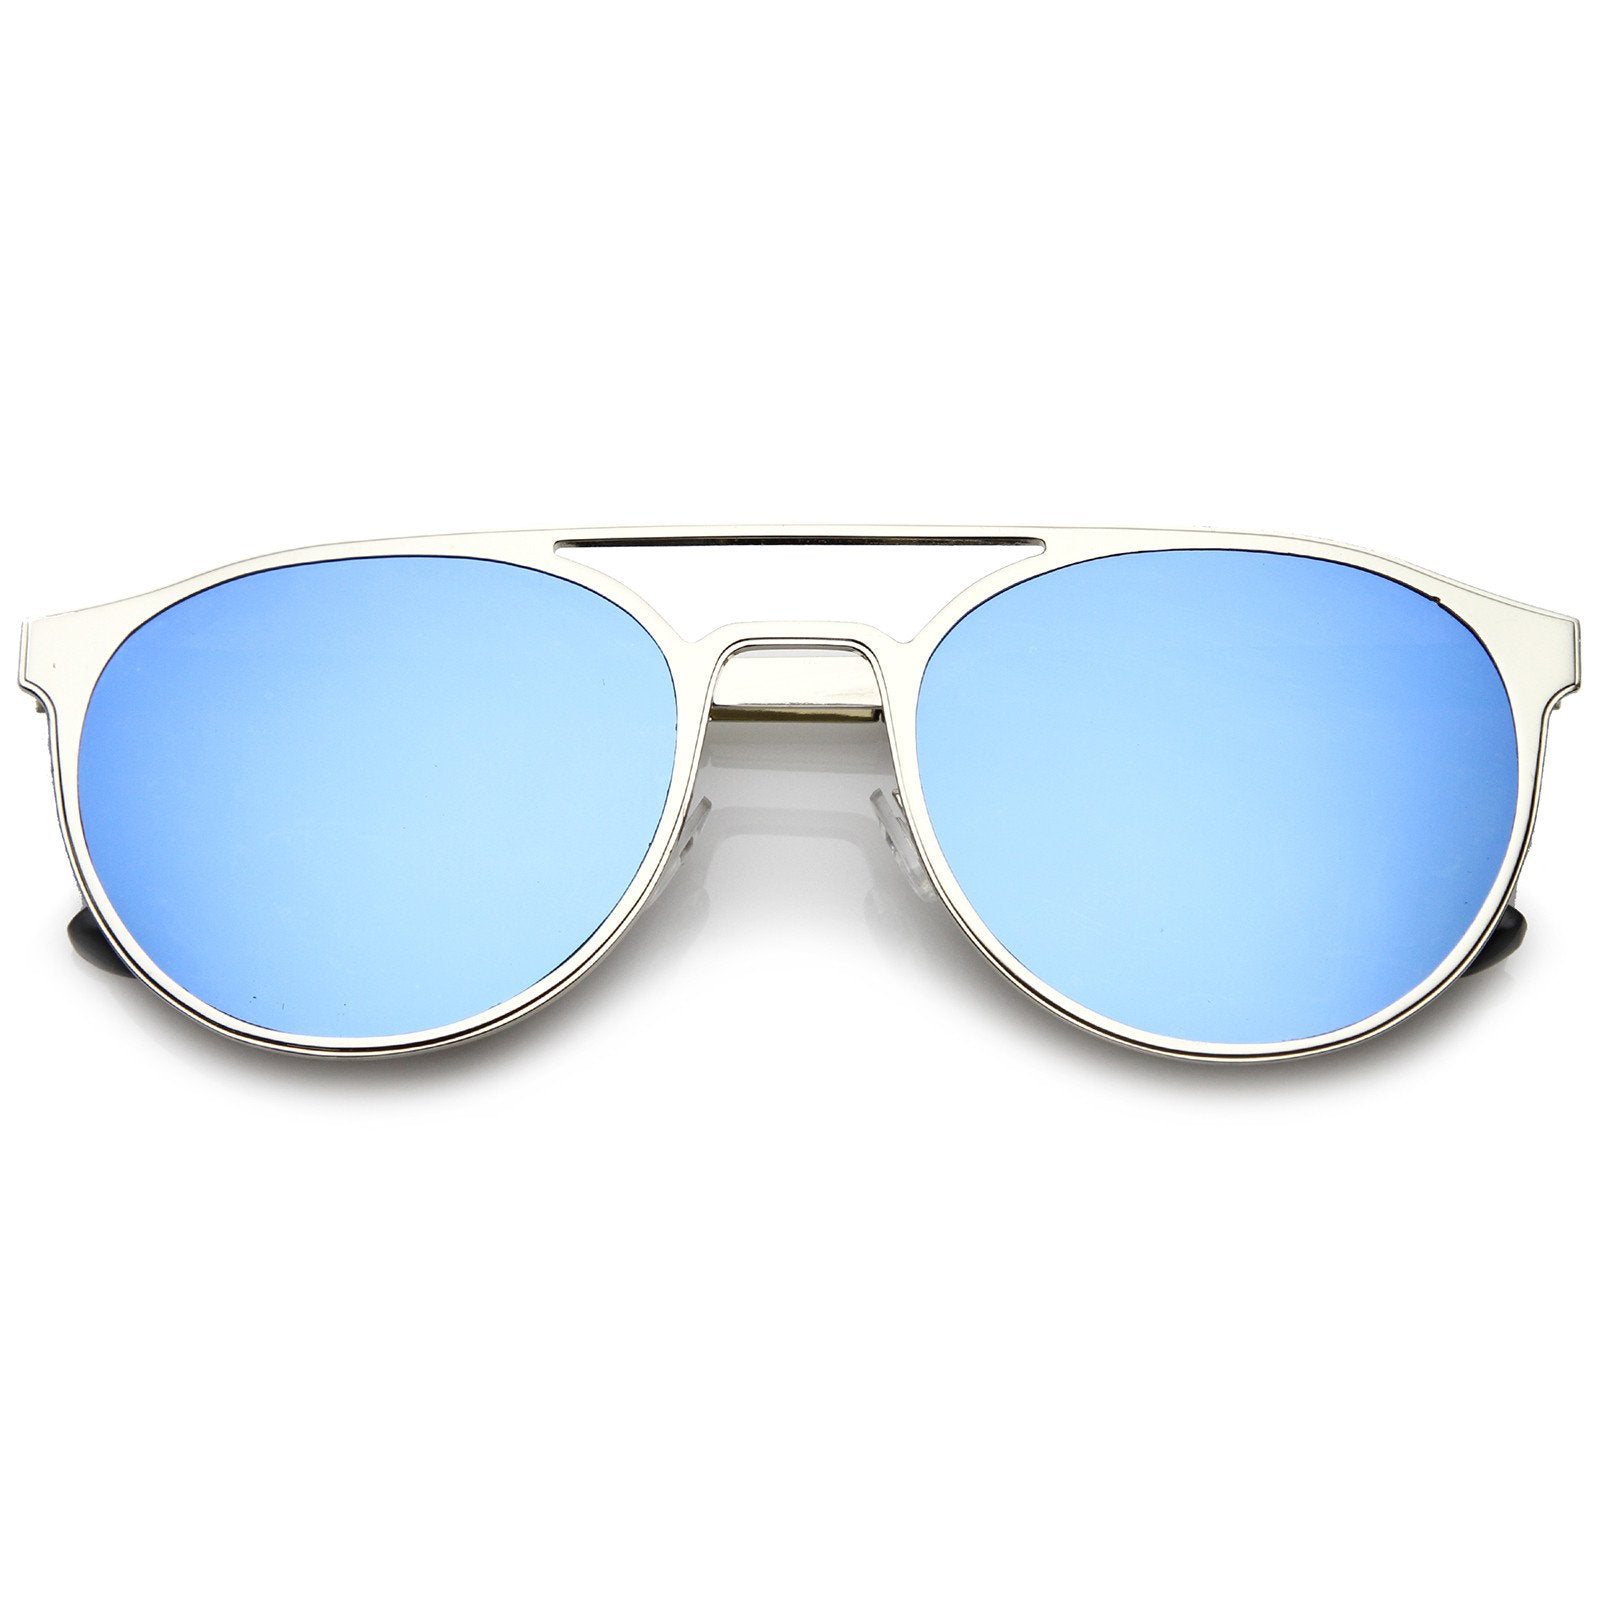 Modern Horned Rim Sleek Round Flat Lens Sunglasses - zeroUV